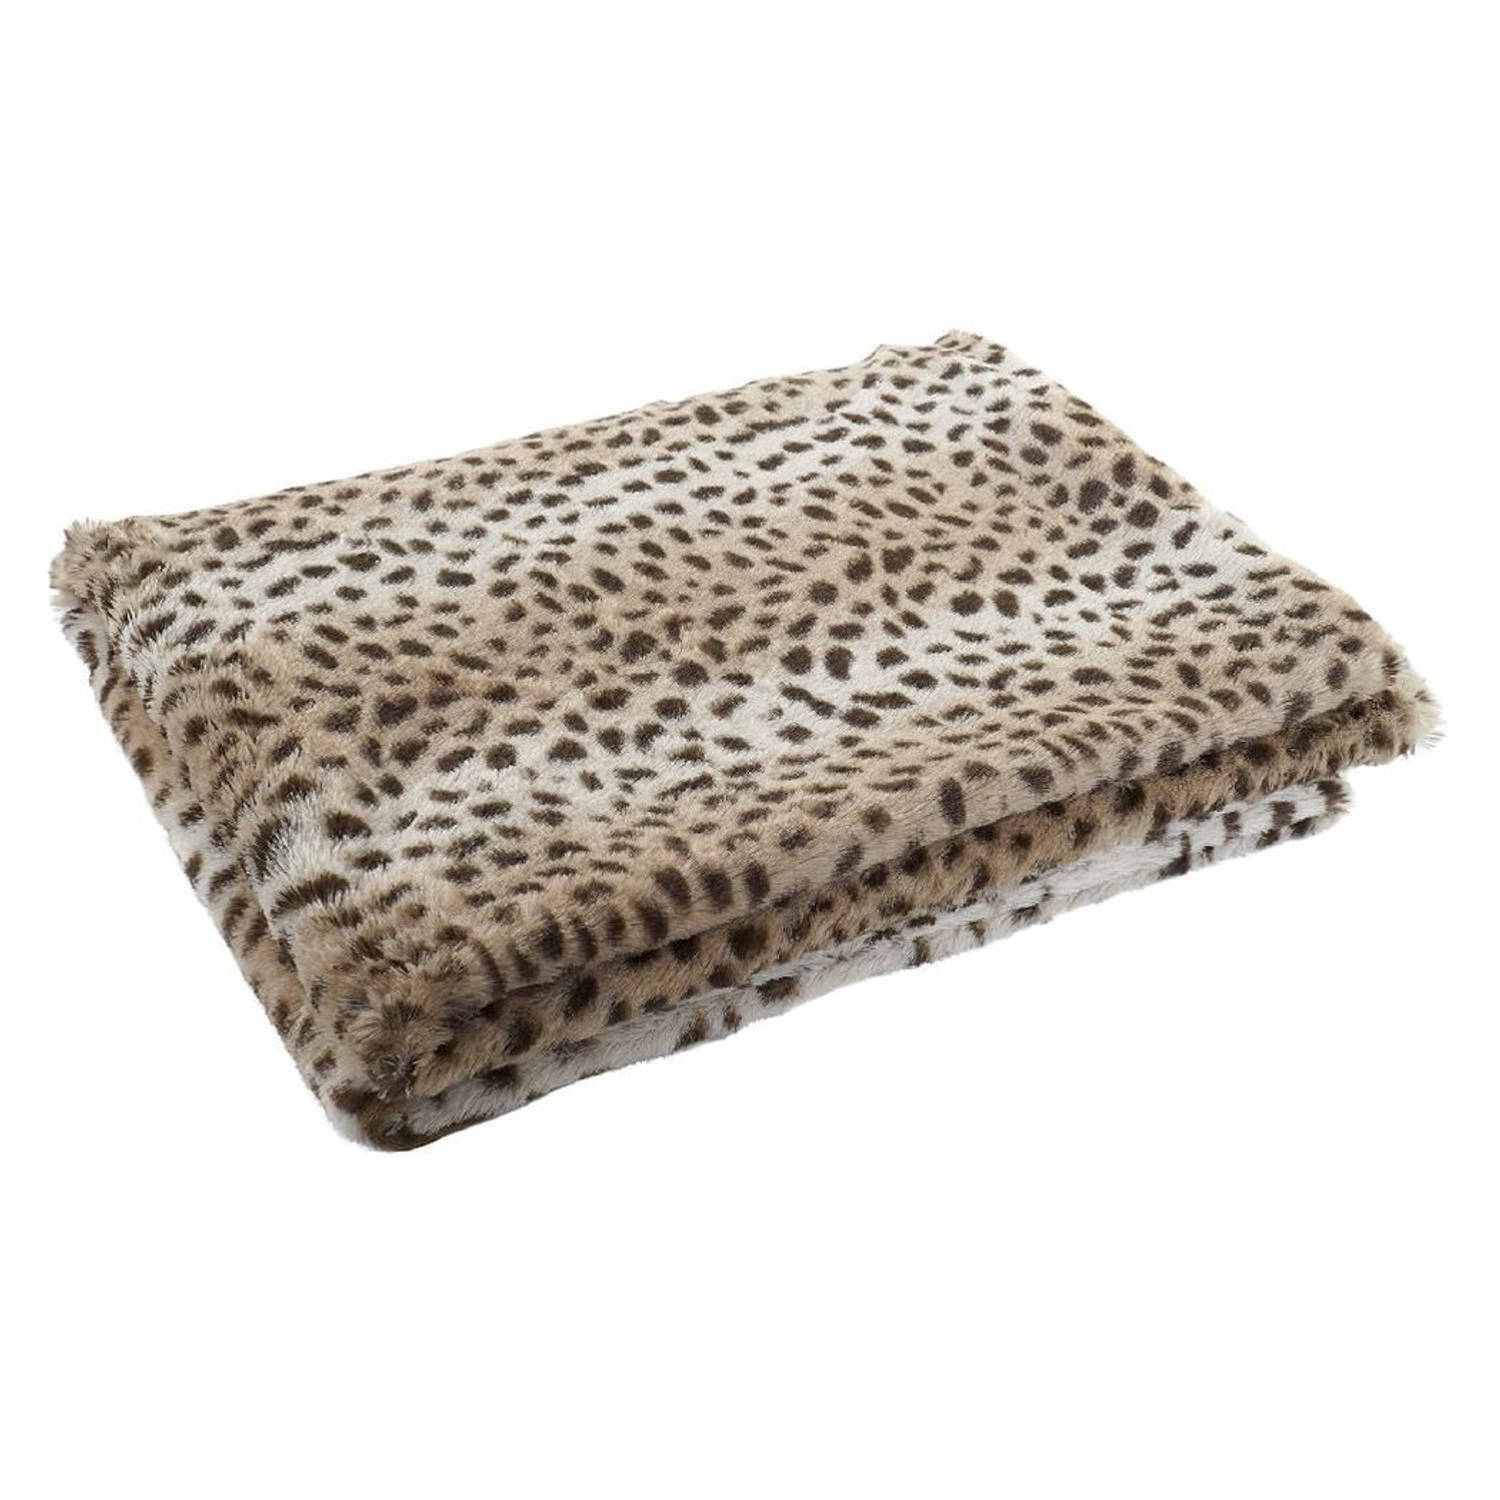 Fleece deken luipaard/panter dierenprint 150 x 200 cm - Plaids